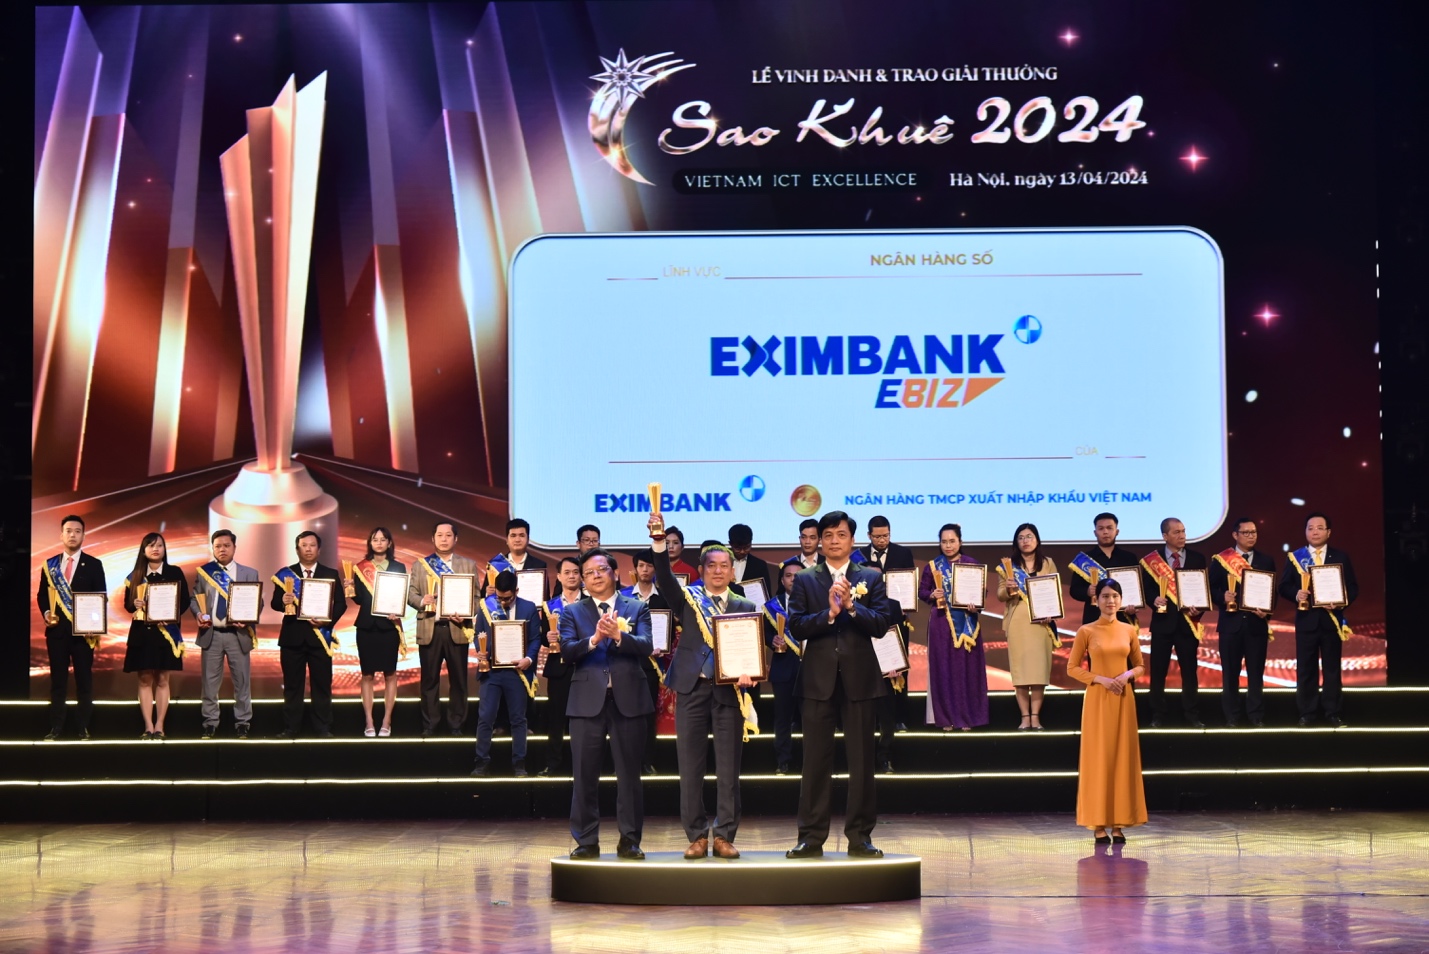 Eximbank vinh dự nhận giải thưởng Sao Khuê 2024- Ảnh 1.